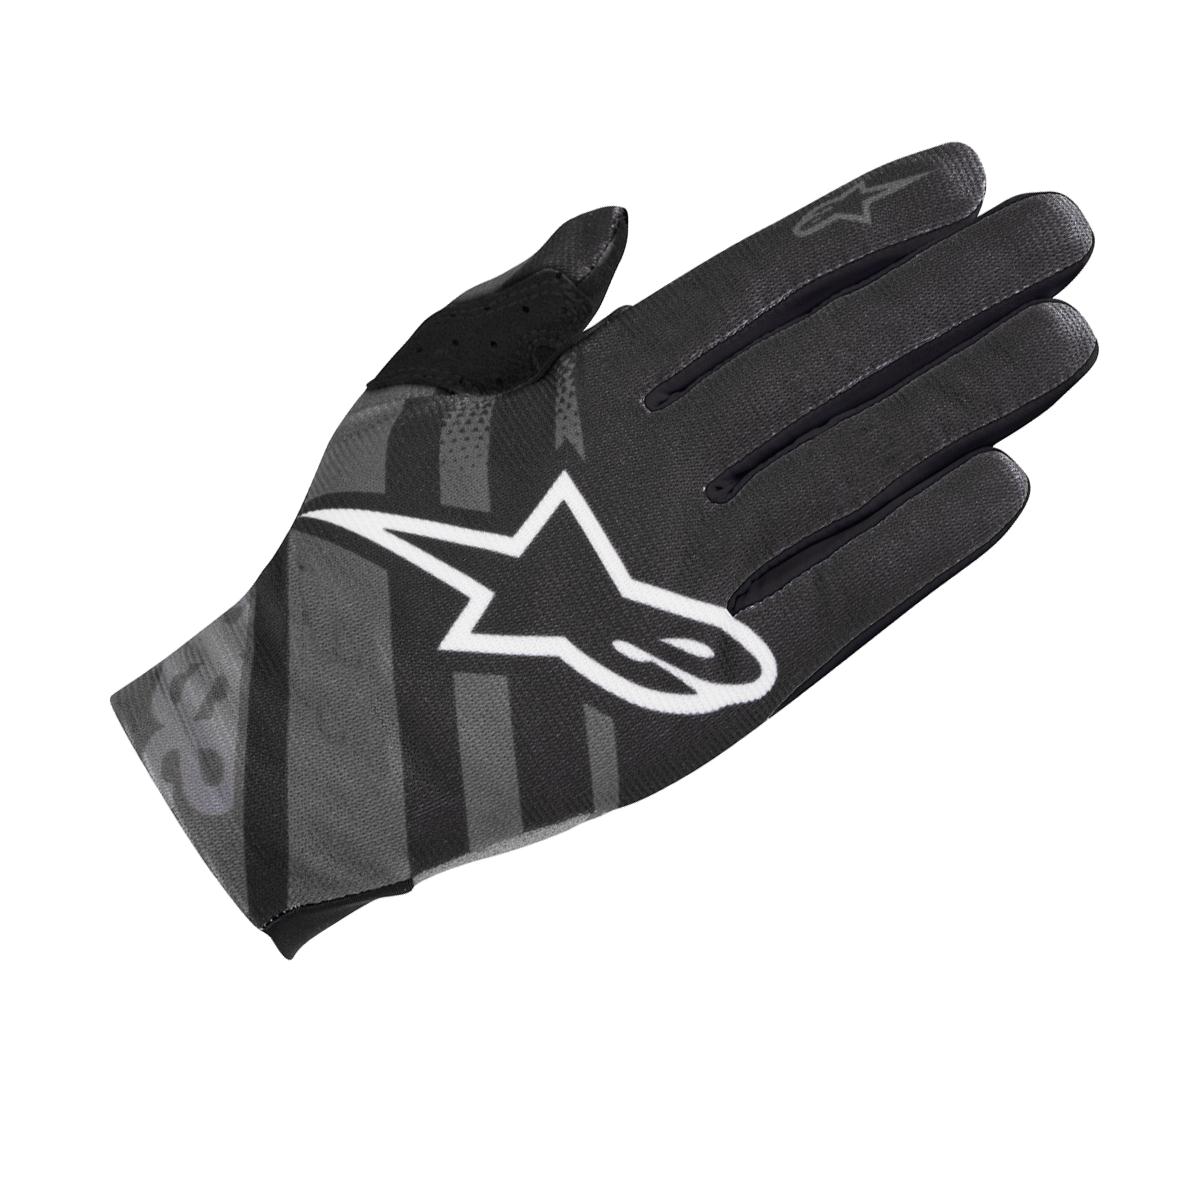 ALPINESTARS Racer Glove 2018 Black/Dark Shadow S